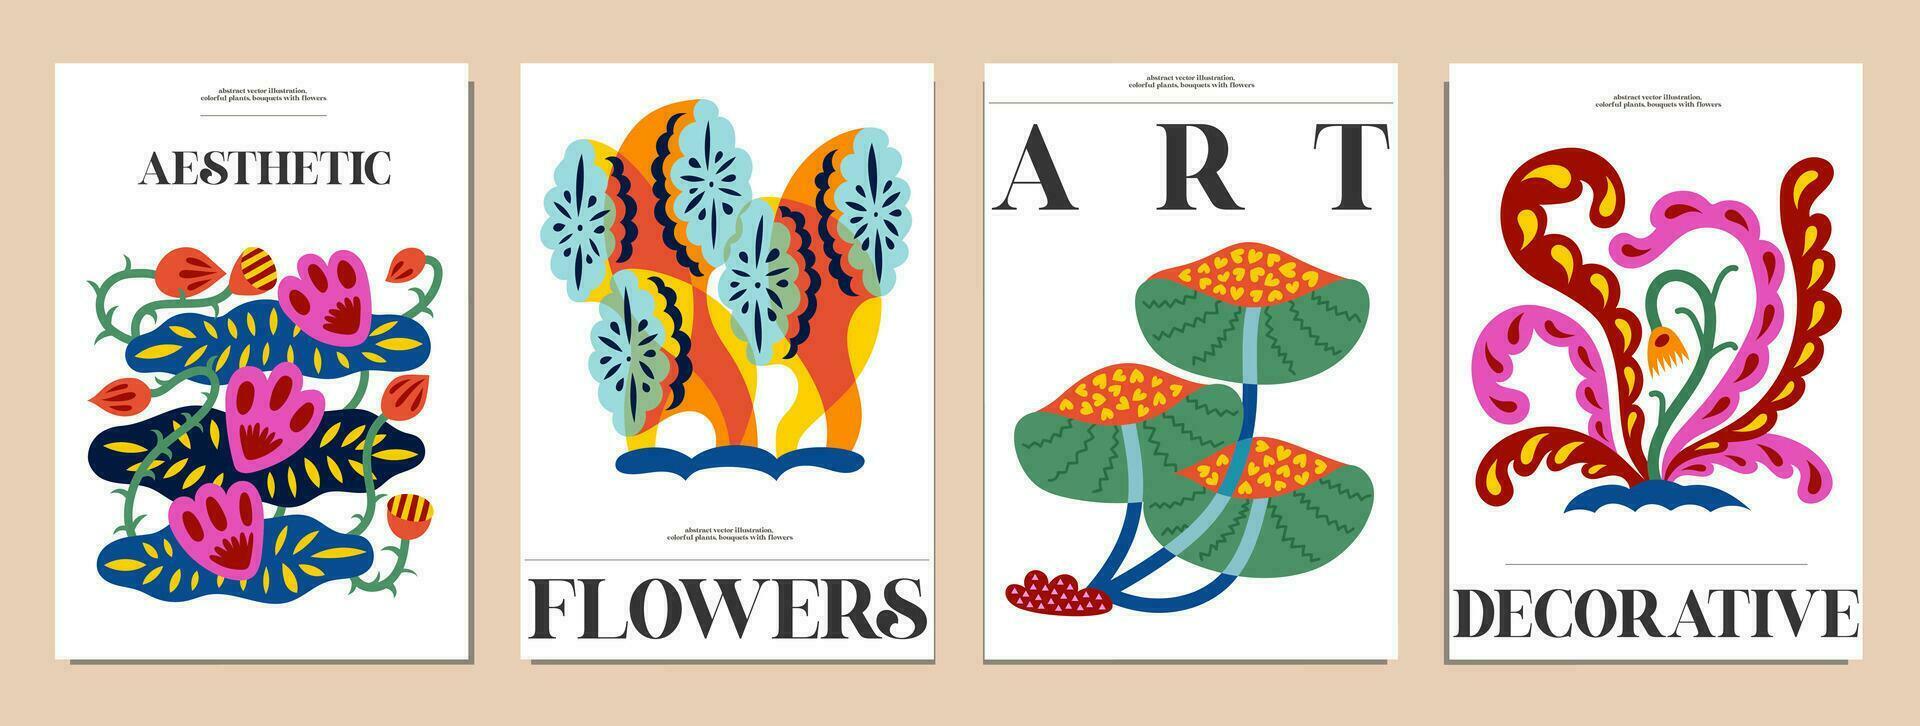 uppsättning av buketter med blommor. interiör målning. färgrik illustrationer av blommor för täcker, bilder. vektor illustration.